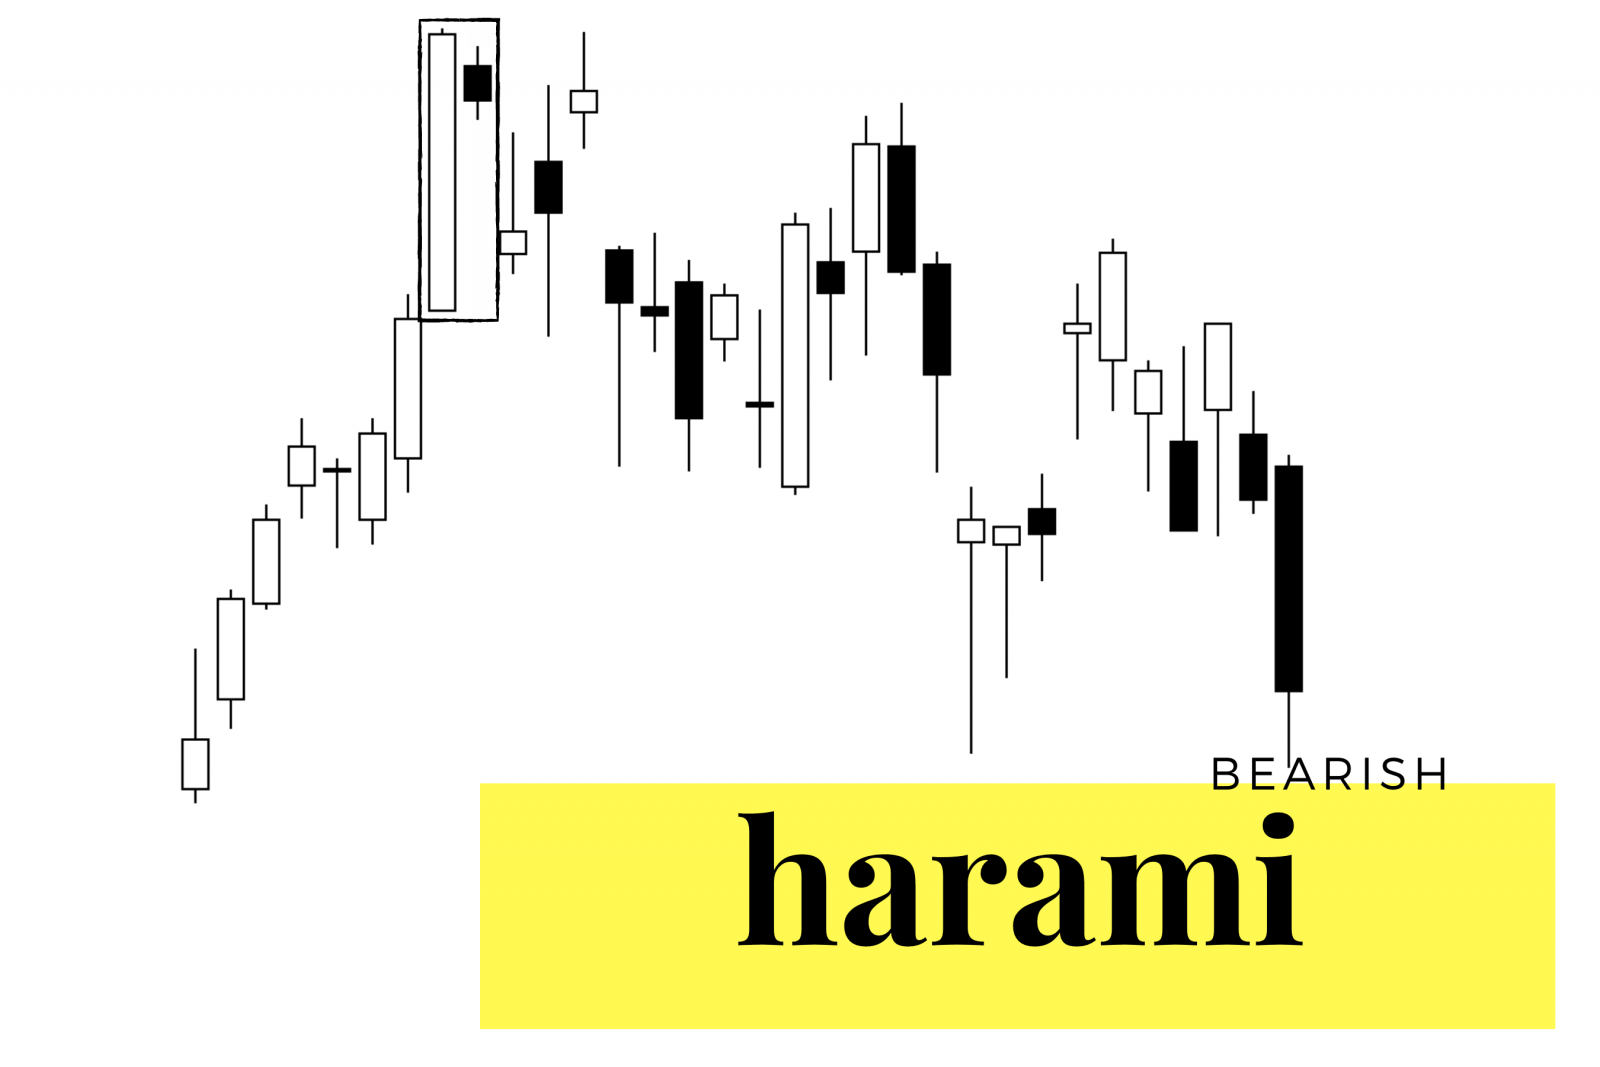 Bullish and Bearish Harami: Definitions and Trading Strategies